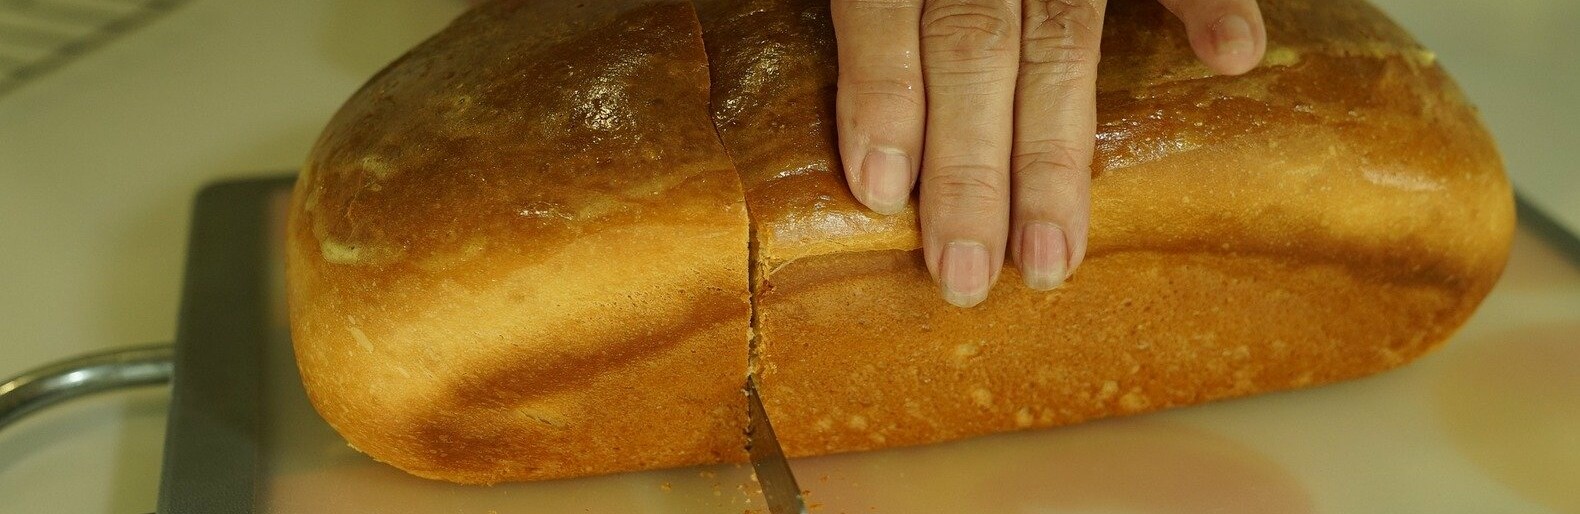 Хлебобулочный комбинат в Алматы ввёл ограничения на продажу хлеба из-за перекупщиков